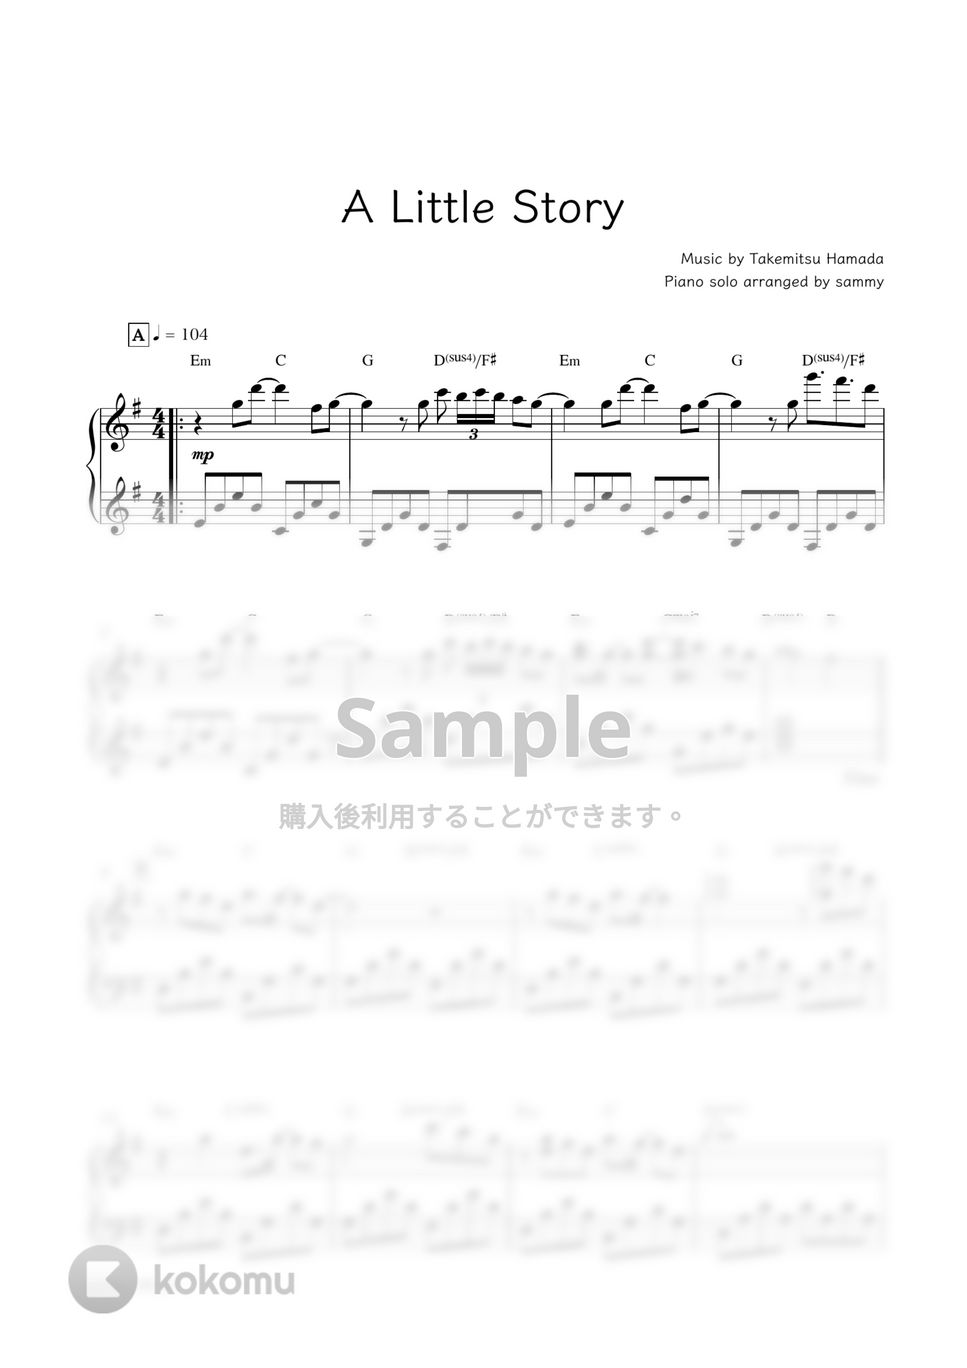 Valentin - A Little Story by sammy